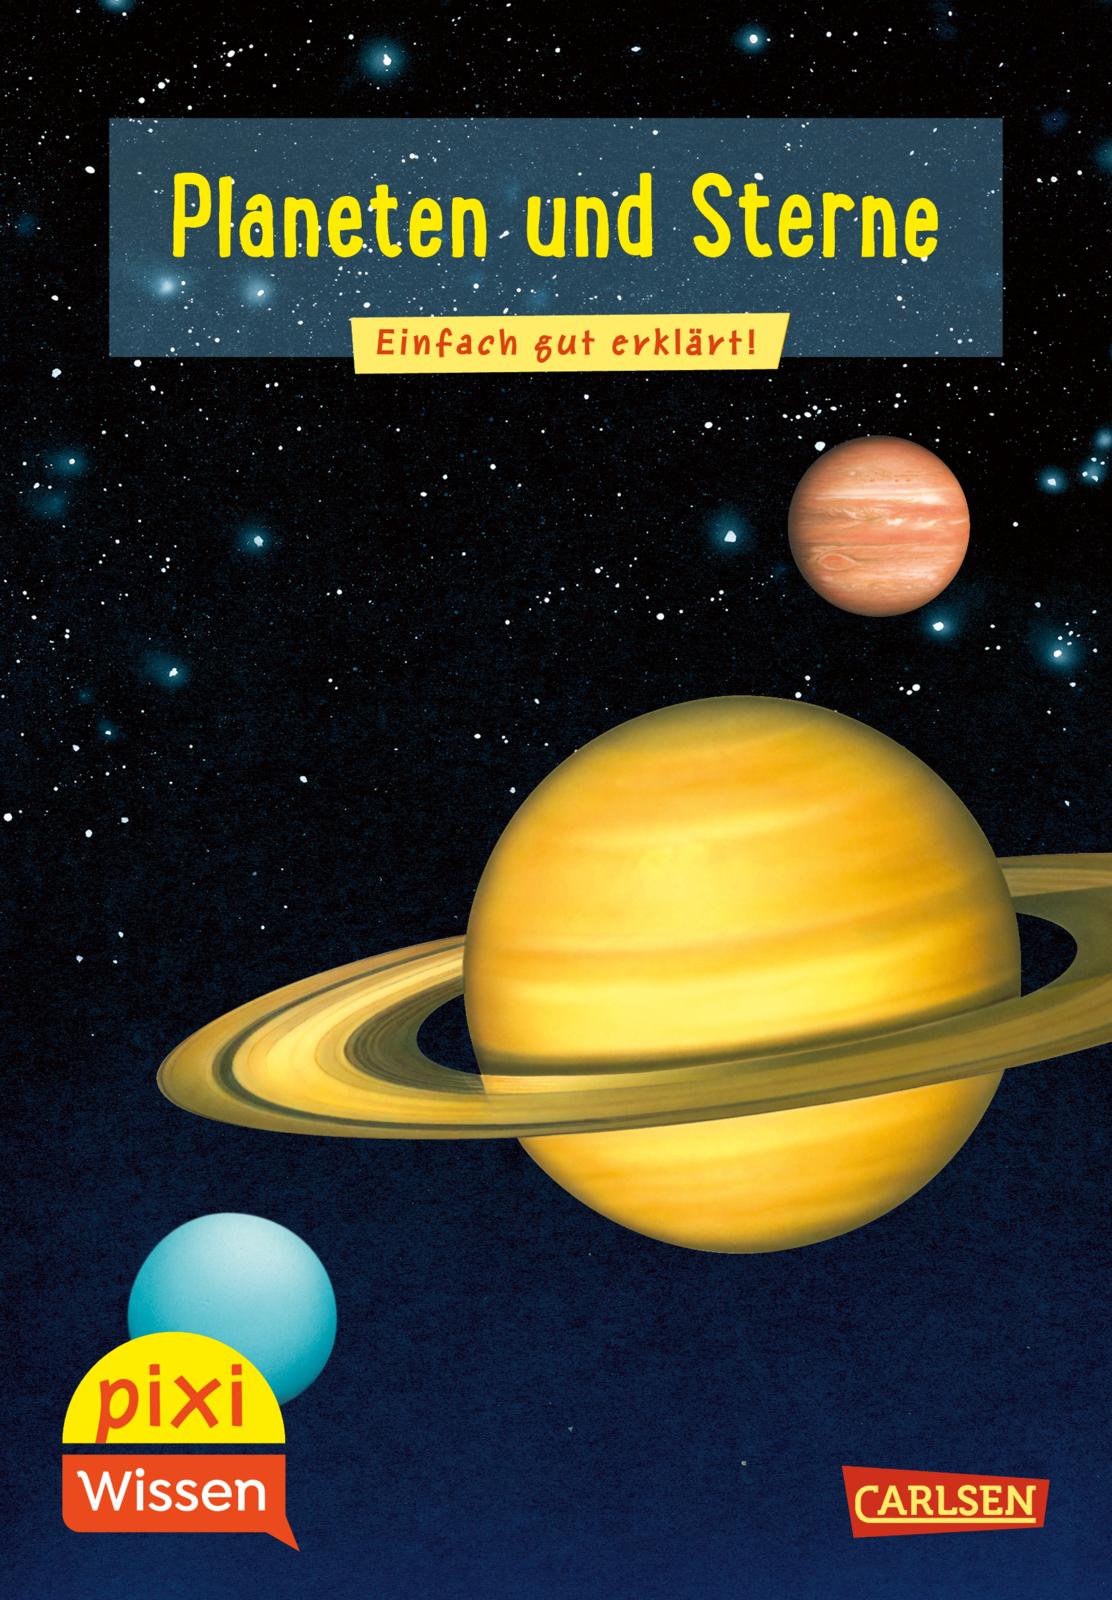 Pixi Wissen Band 10 Planeten und Sterne erklärt die Grundlagen des Weltraums kindgerecht.